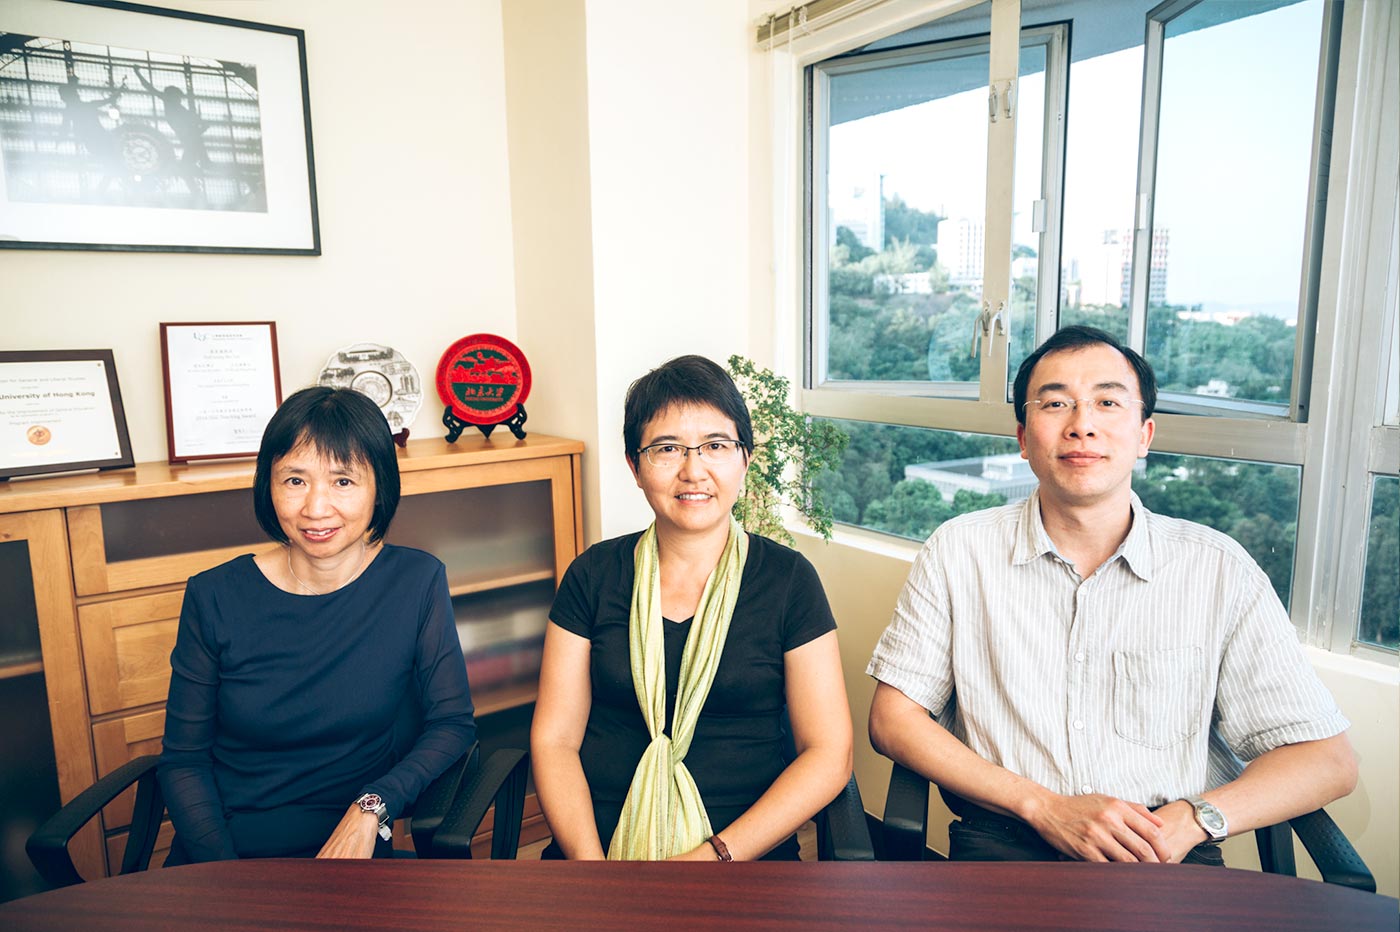 The team leaders of the general education programme, Prof. Leung Mei-yee <em>(middle)</em>, Dr. Julie Chiu <em>(left)</em> and Dr. Wong Wing-hung <em>(right)</em>